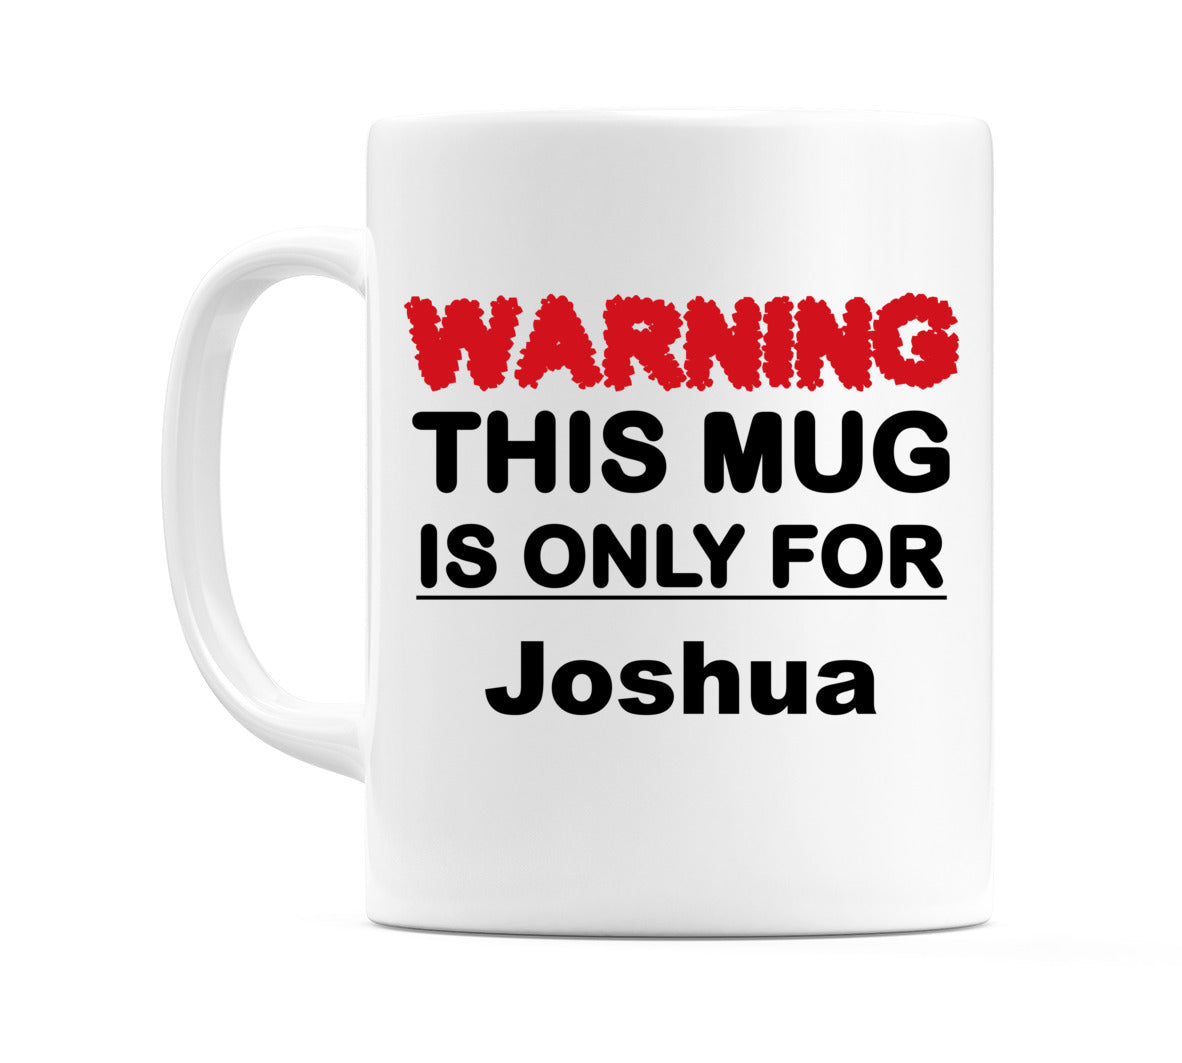 Warning This Mug is ONLY for Joshua Mug